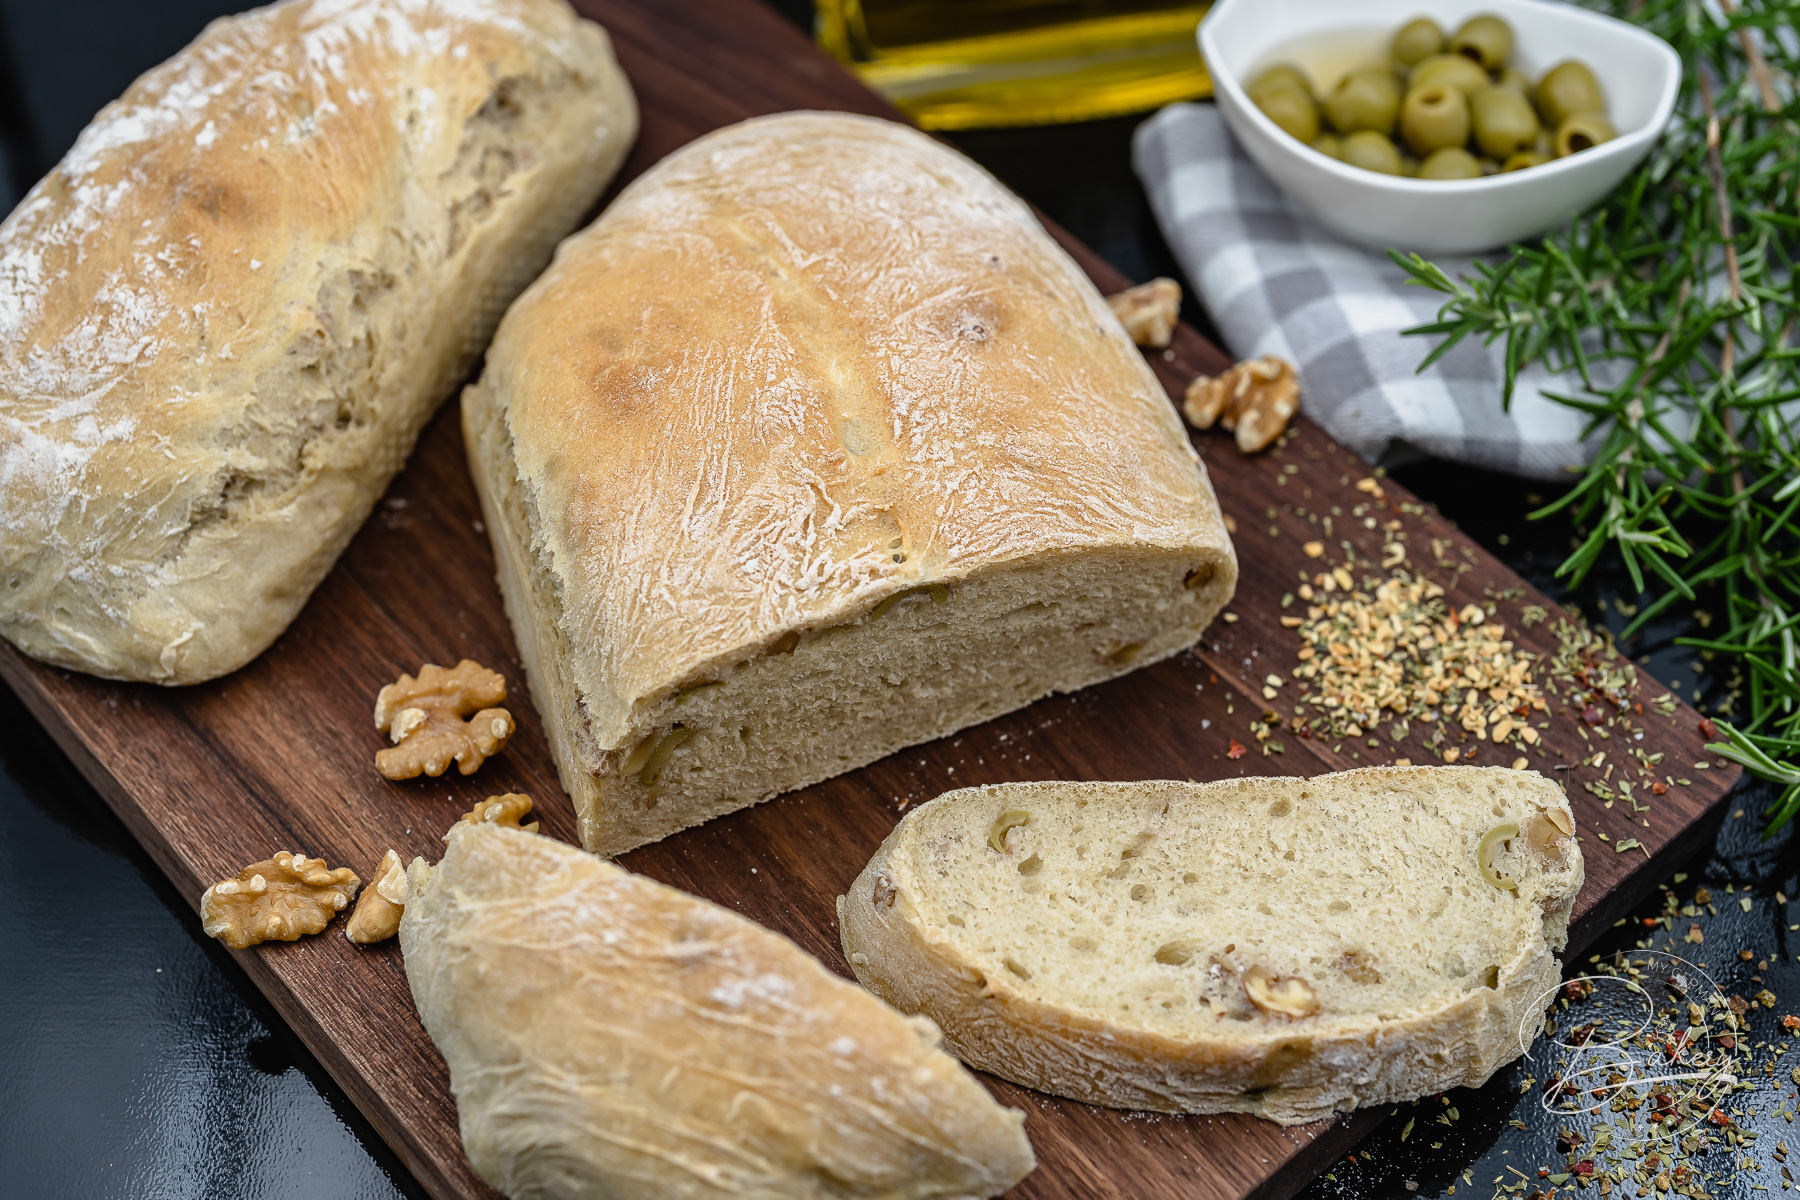 Simple ciabatta recipe - delicious Italian bread as a dinner bread - best and easy ciabatta recipe for delicious Italian bread as dinner bread with salad, barbecue, pasta or even pure with olive oil,